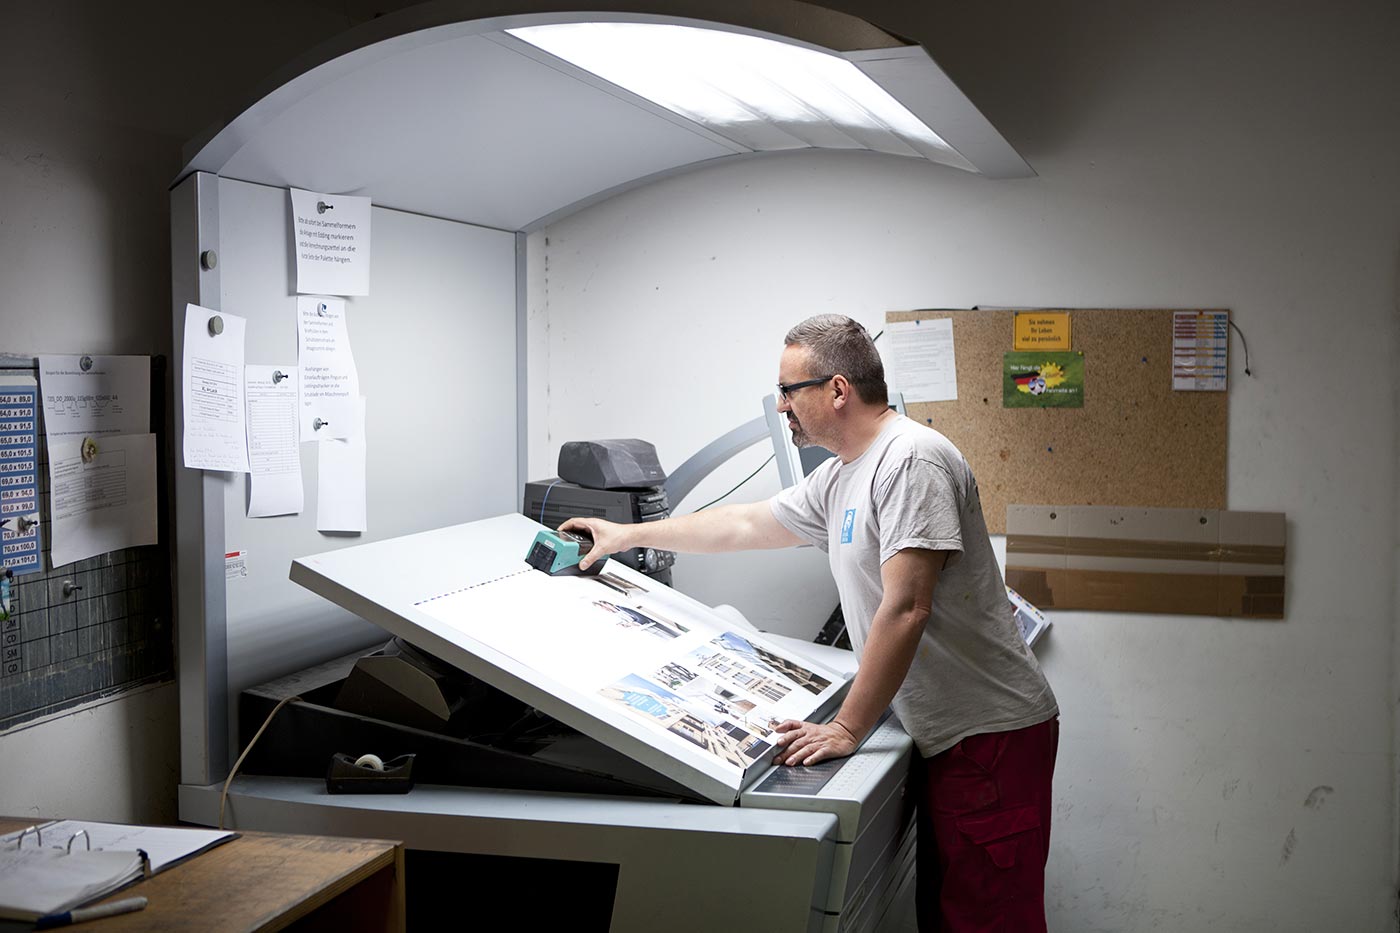 Printing at medialis, Photo by Sina Diehl